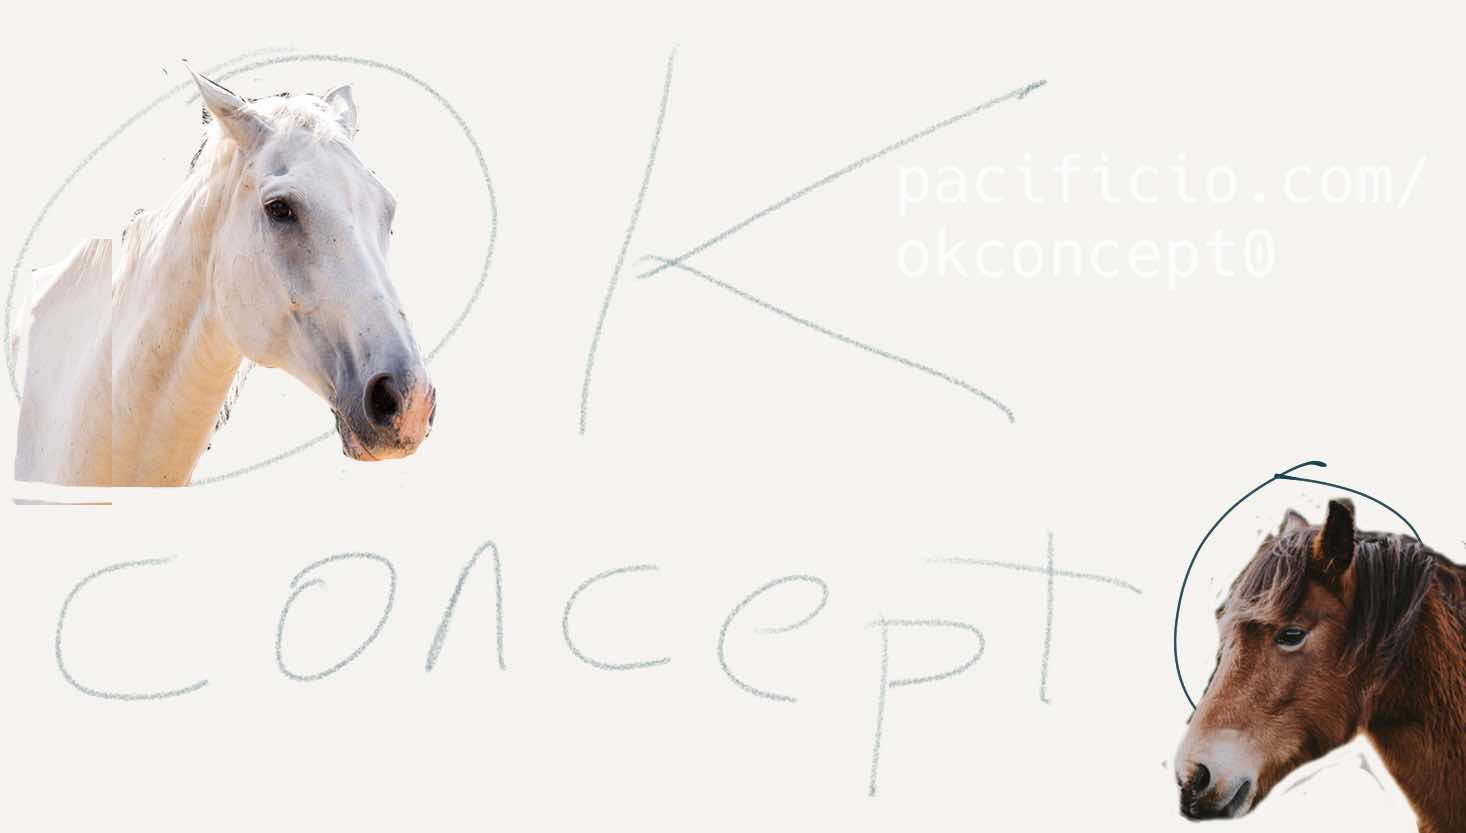 2 horses logo for okconcept0